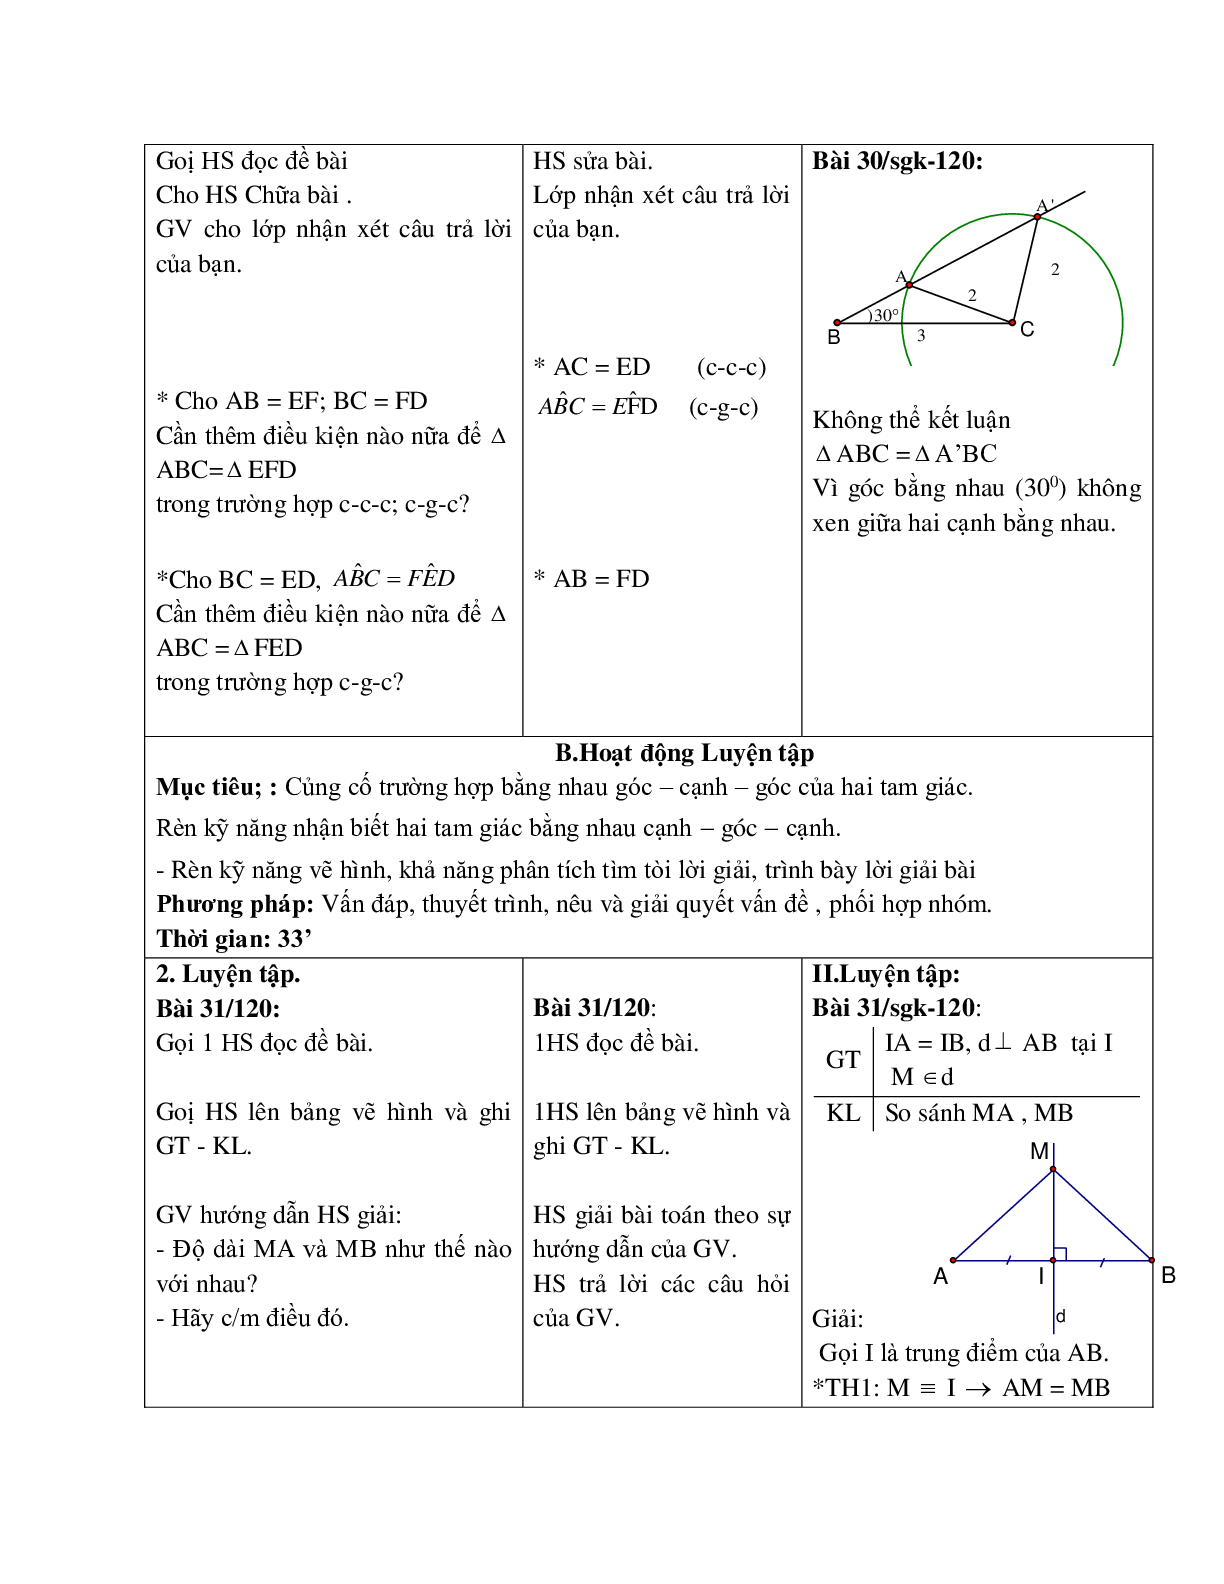 Giáo án Toán học 7 bài 4: Trường hợp bằng nhau thứ hai của tam giác c.g.c (TT) hay nhất (trang 5)